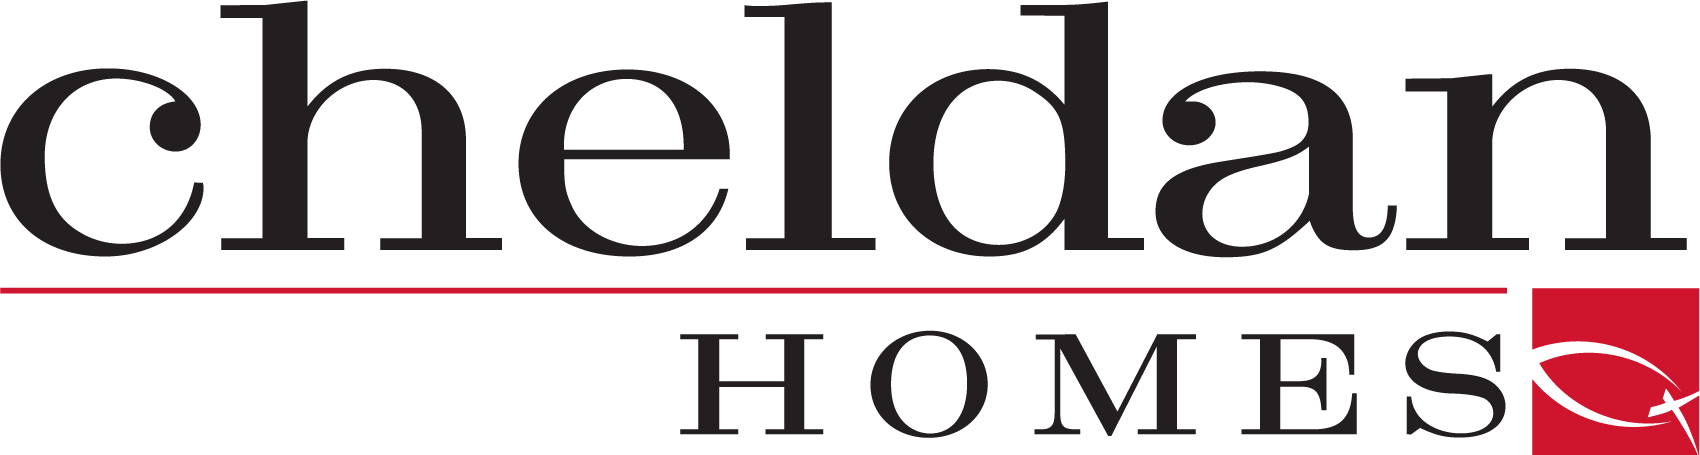 Incredible Cheldan homes warranty Trend in 2022